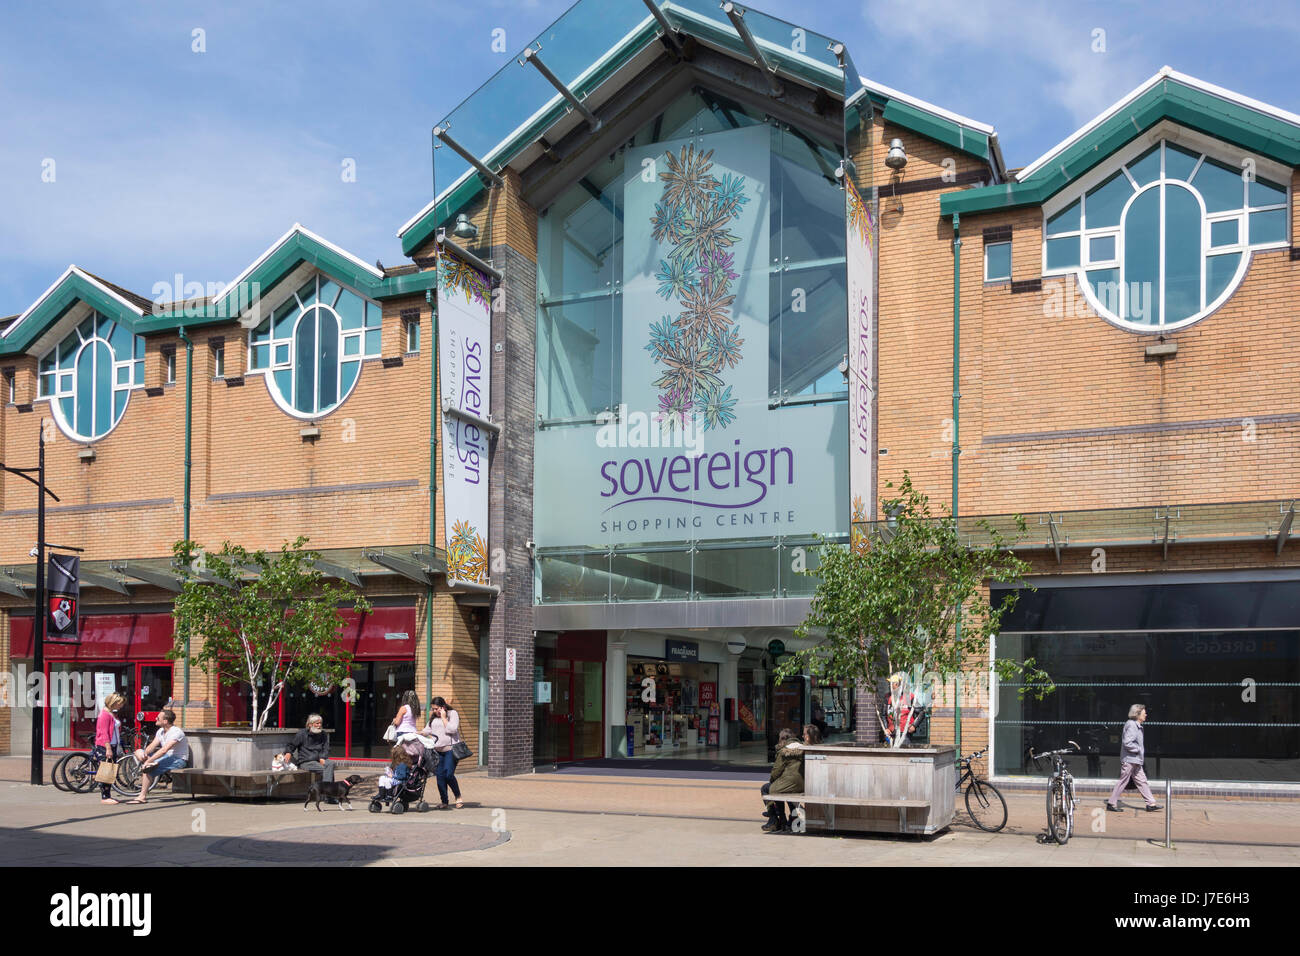 Entrée au centre commercial de souverain, Christchurch Road, Boscombe, Bournemouth, Dorset, England, United Kingdom Banque D'Images